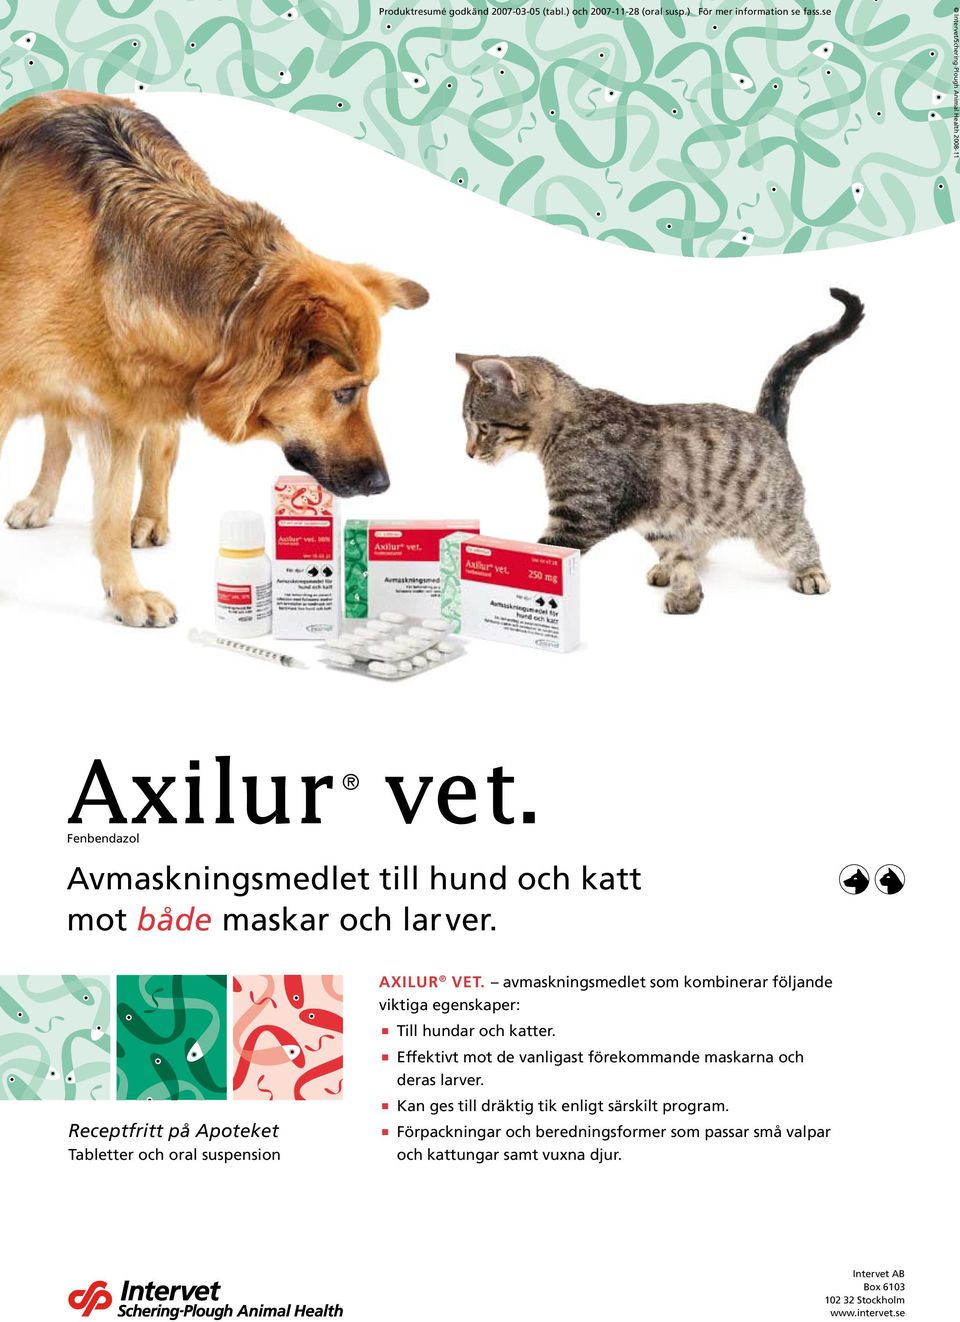 Receptfritt på Apoteket Tabletter och oral suspension AXILUR VET. avmaskningsmedlet som kombinerar följande viktiga egenskaper: Till hundar och katter.